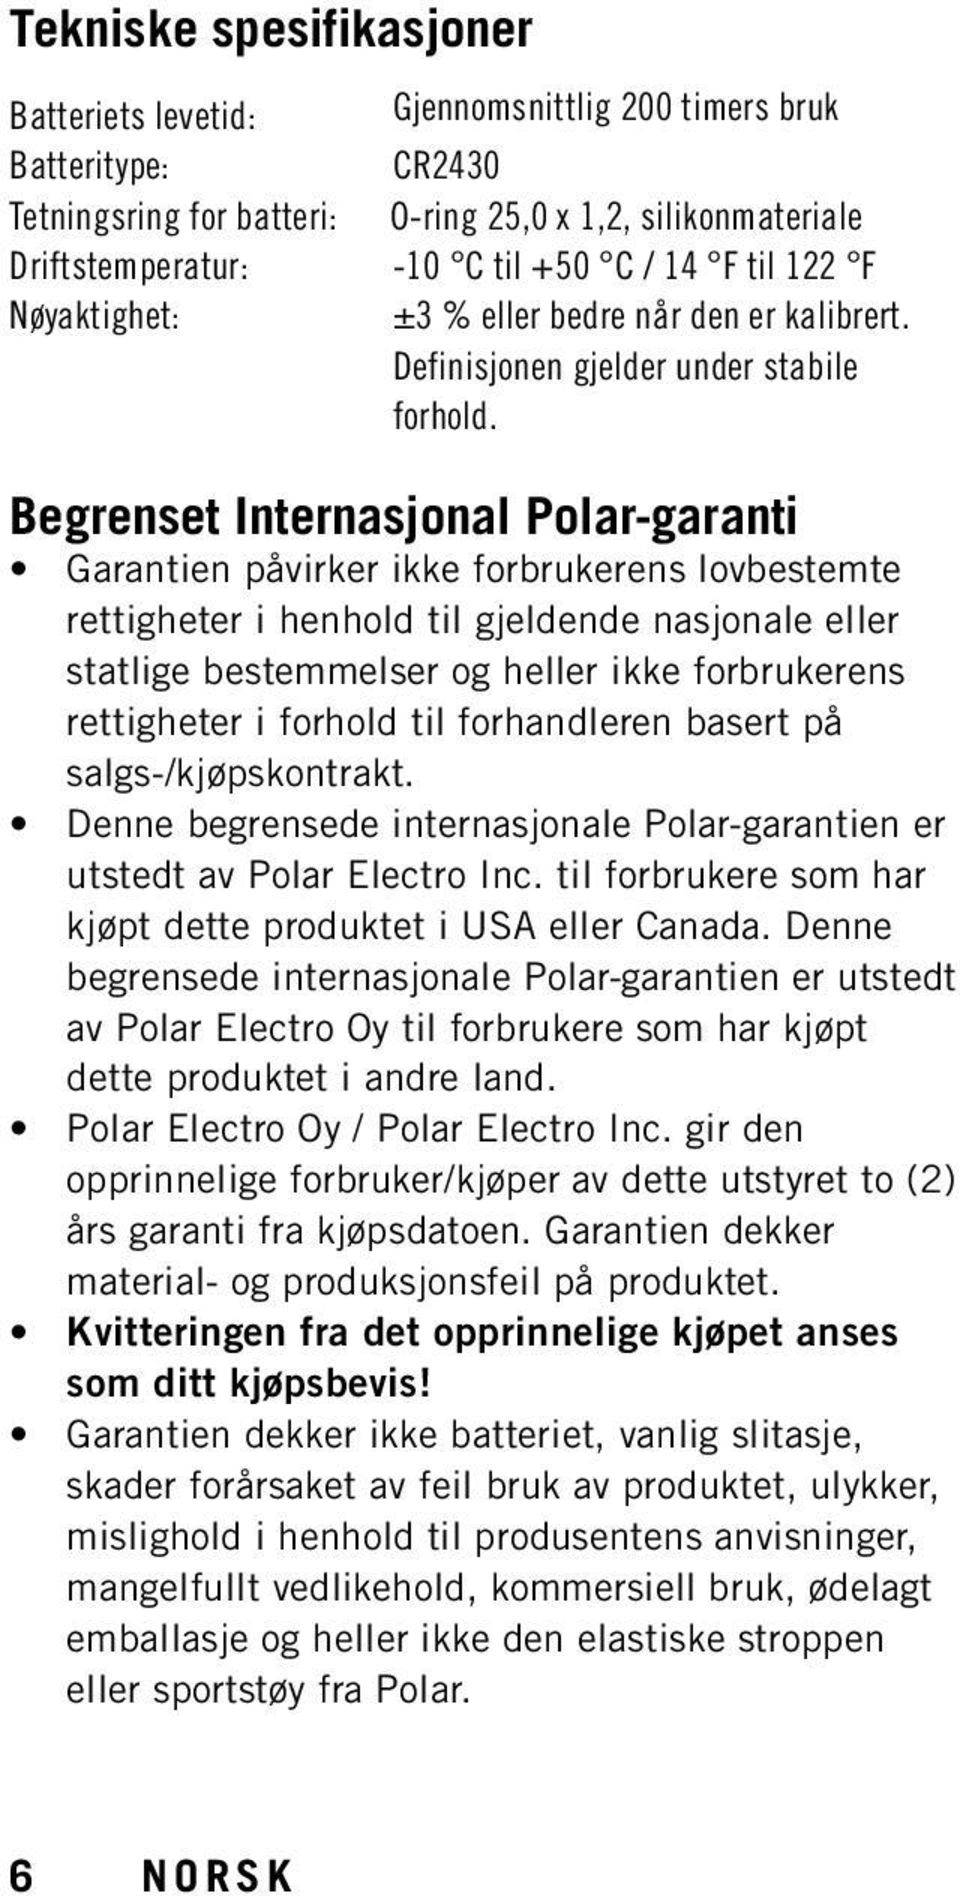 Begrenset Internasjonal Polar-garanti Garantien påvirker ikke forbrukerens lovbestemte rettigheter i henhold til gjeldende nasjonale eller statlige bestemmelser og heller ikke forbrukerens